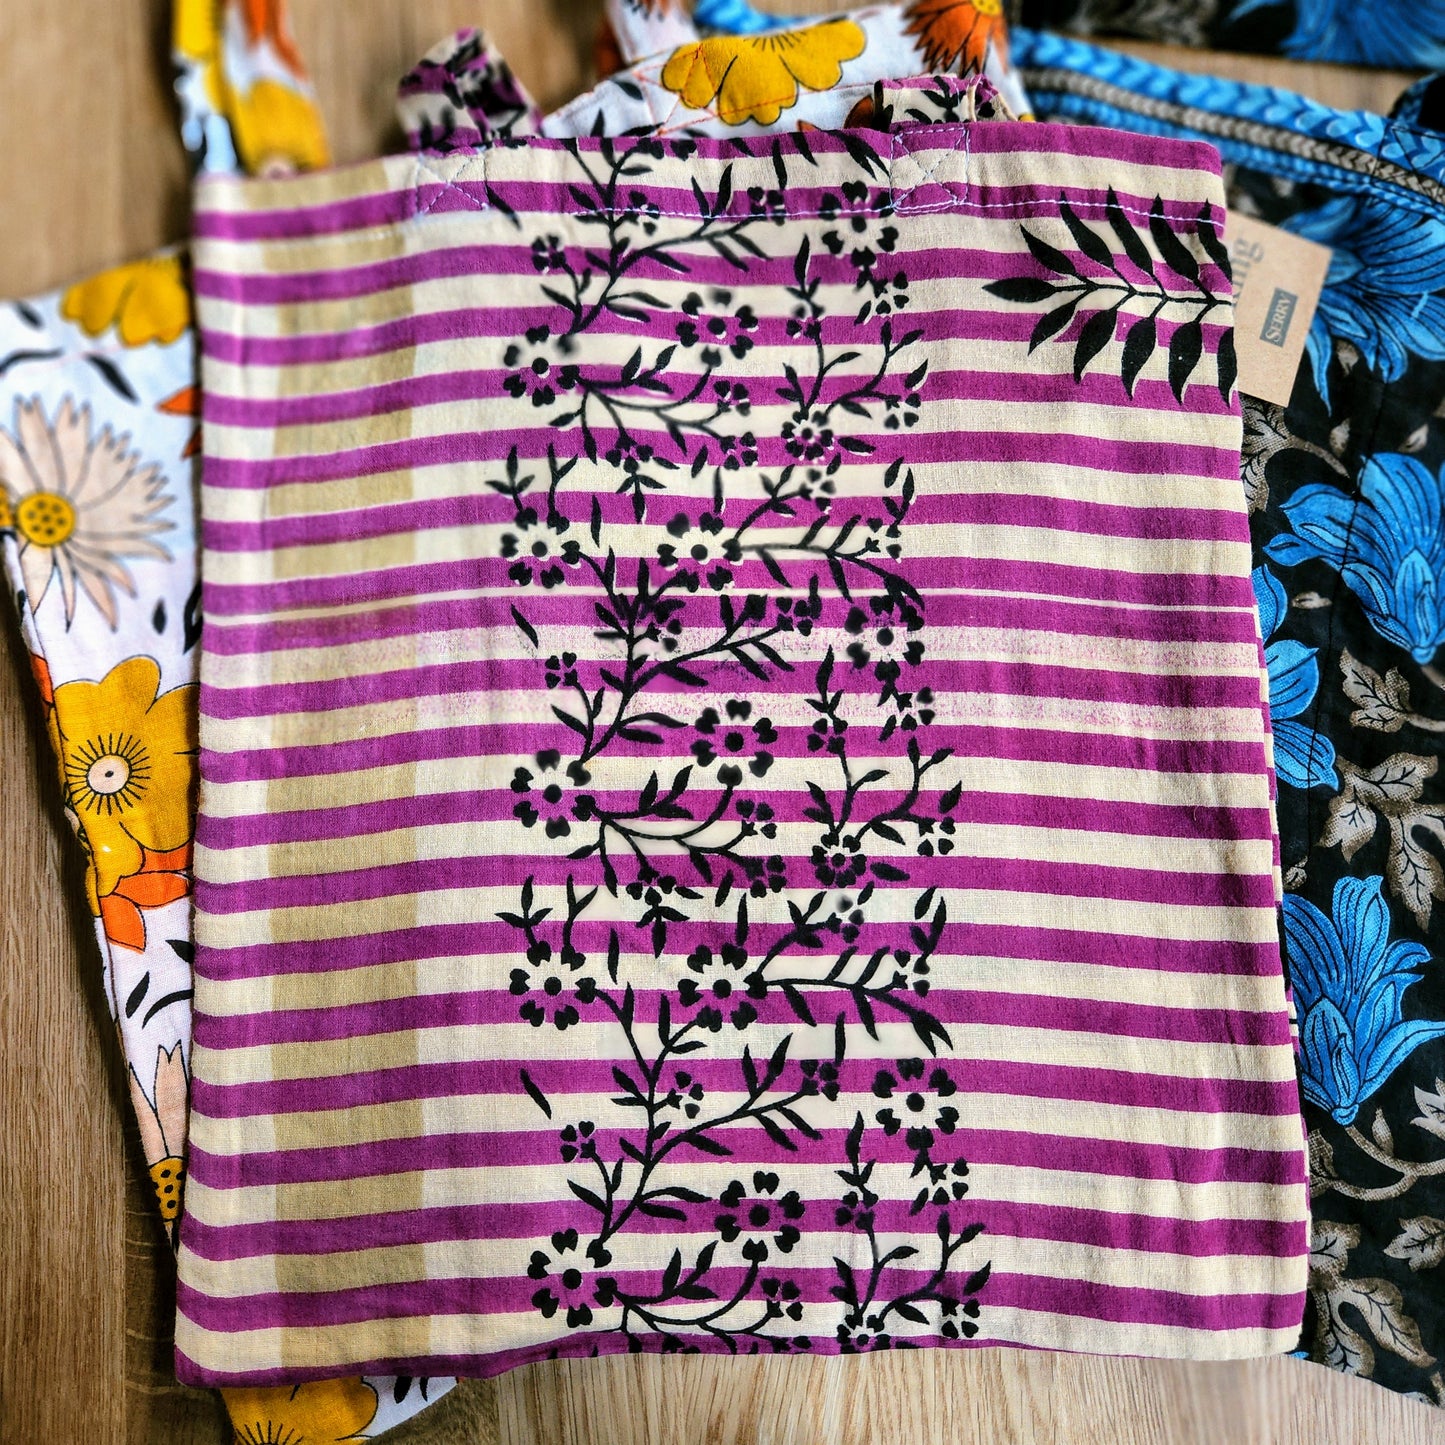 Recycled Sari Tote Bags